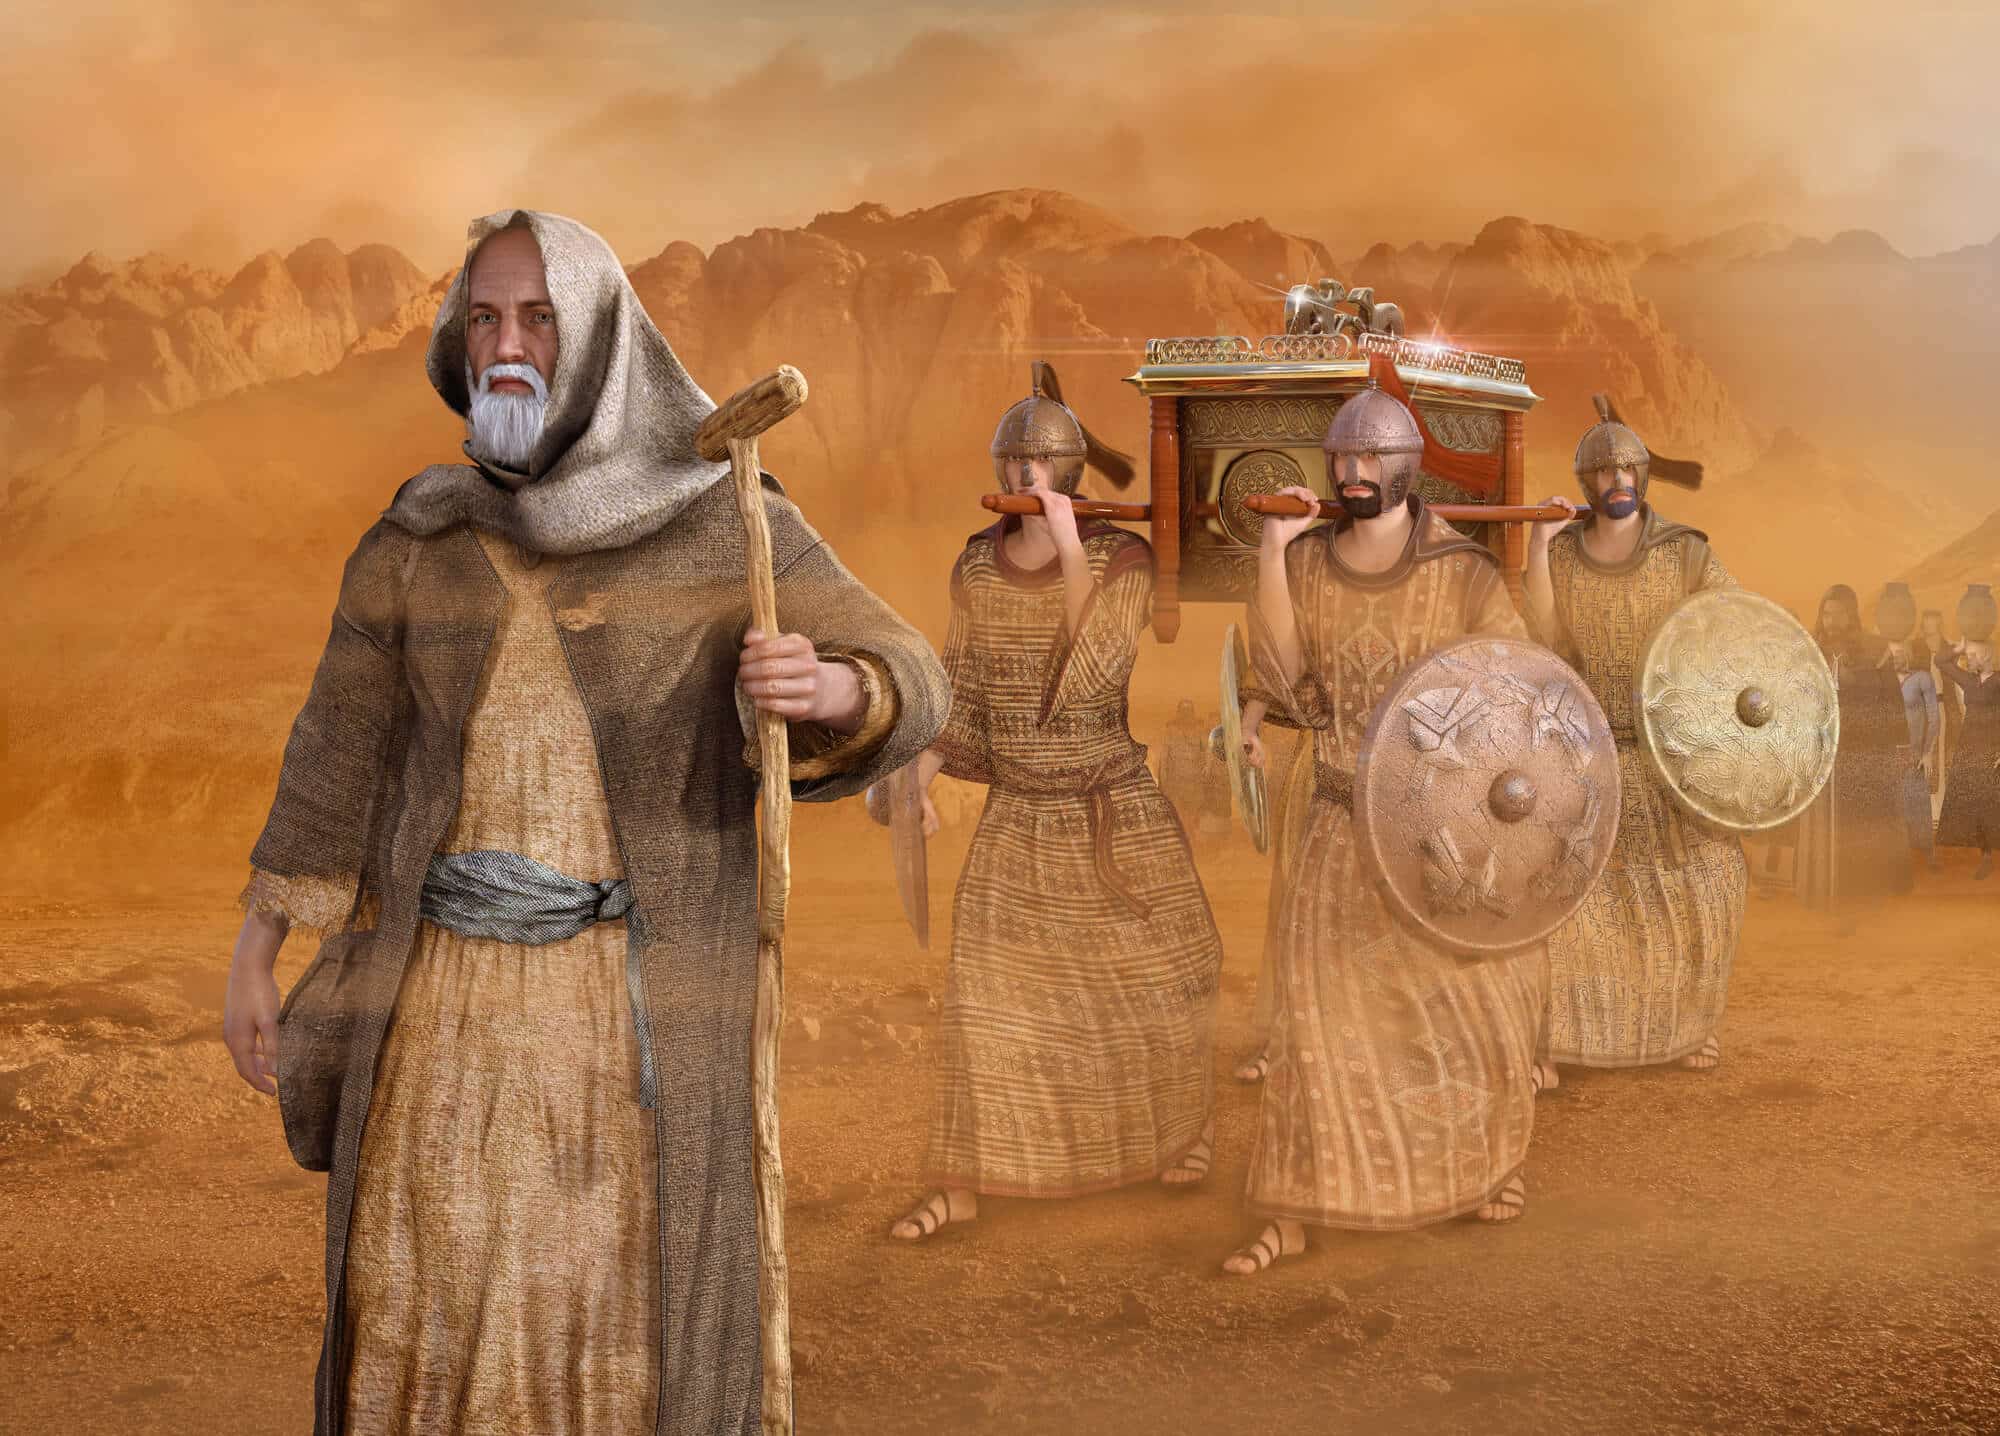 موسى يقود بني إسرائيل في الصحراء. الرسم التوضيحي: موقع Depositphotos.com